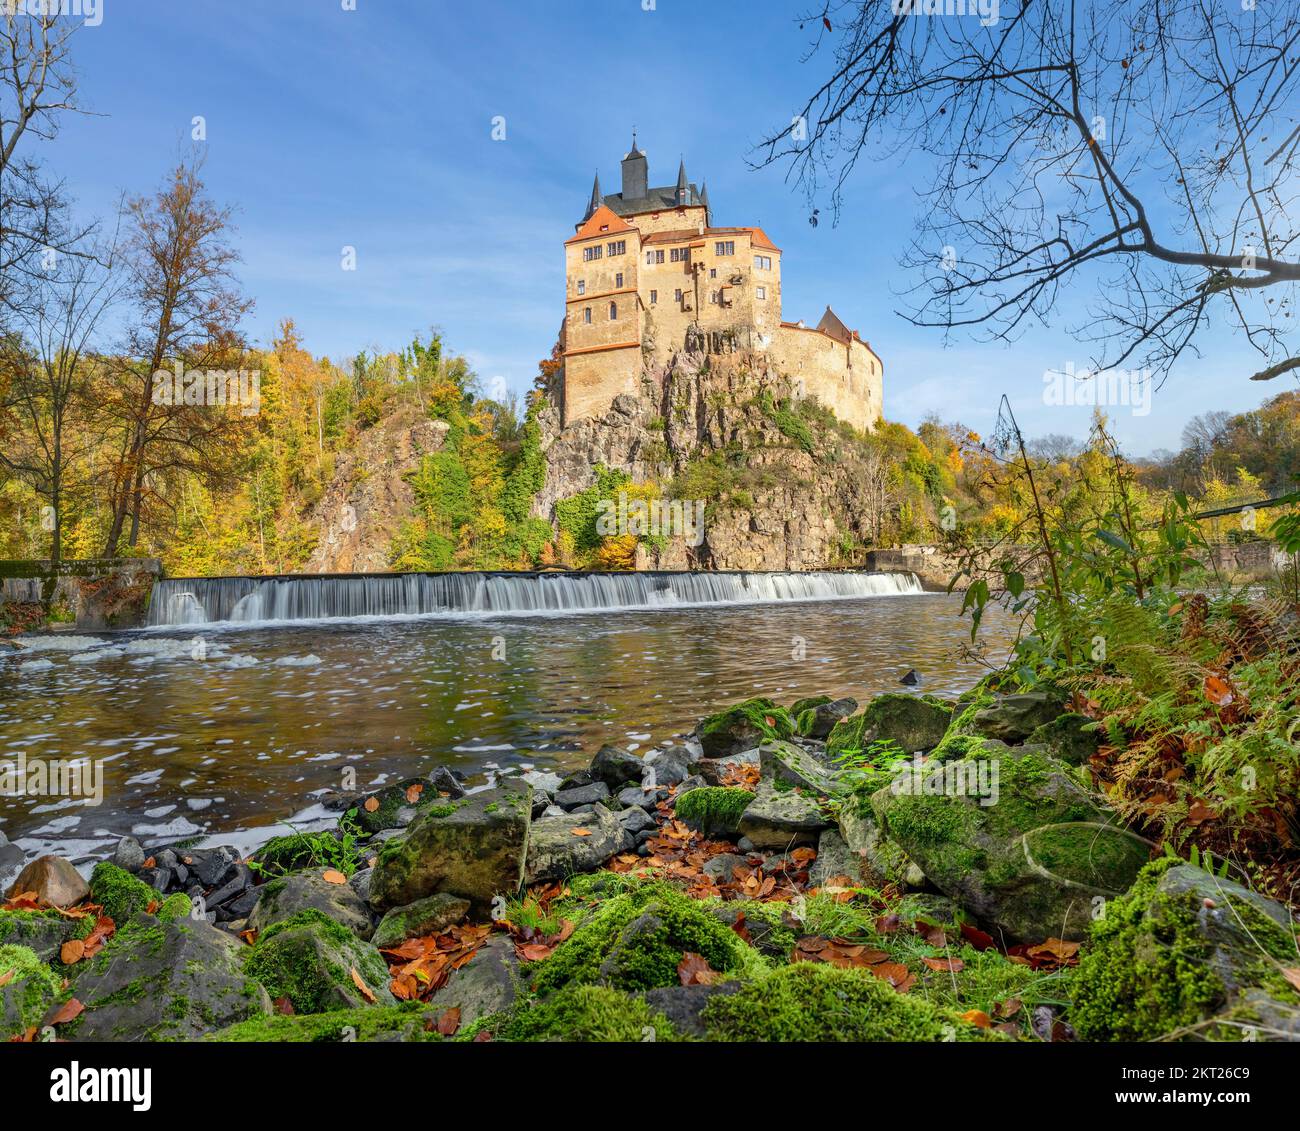 Vista del castillo gótico de Kriebstein a orillas del río en el otoño soleado día en Sajonia, Alemania Foto de stock